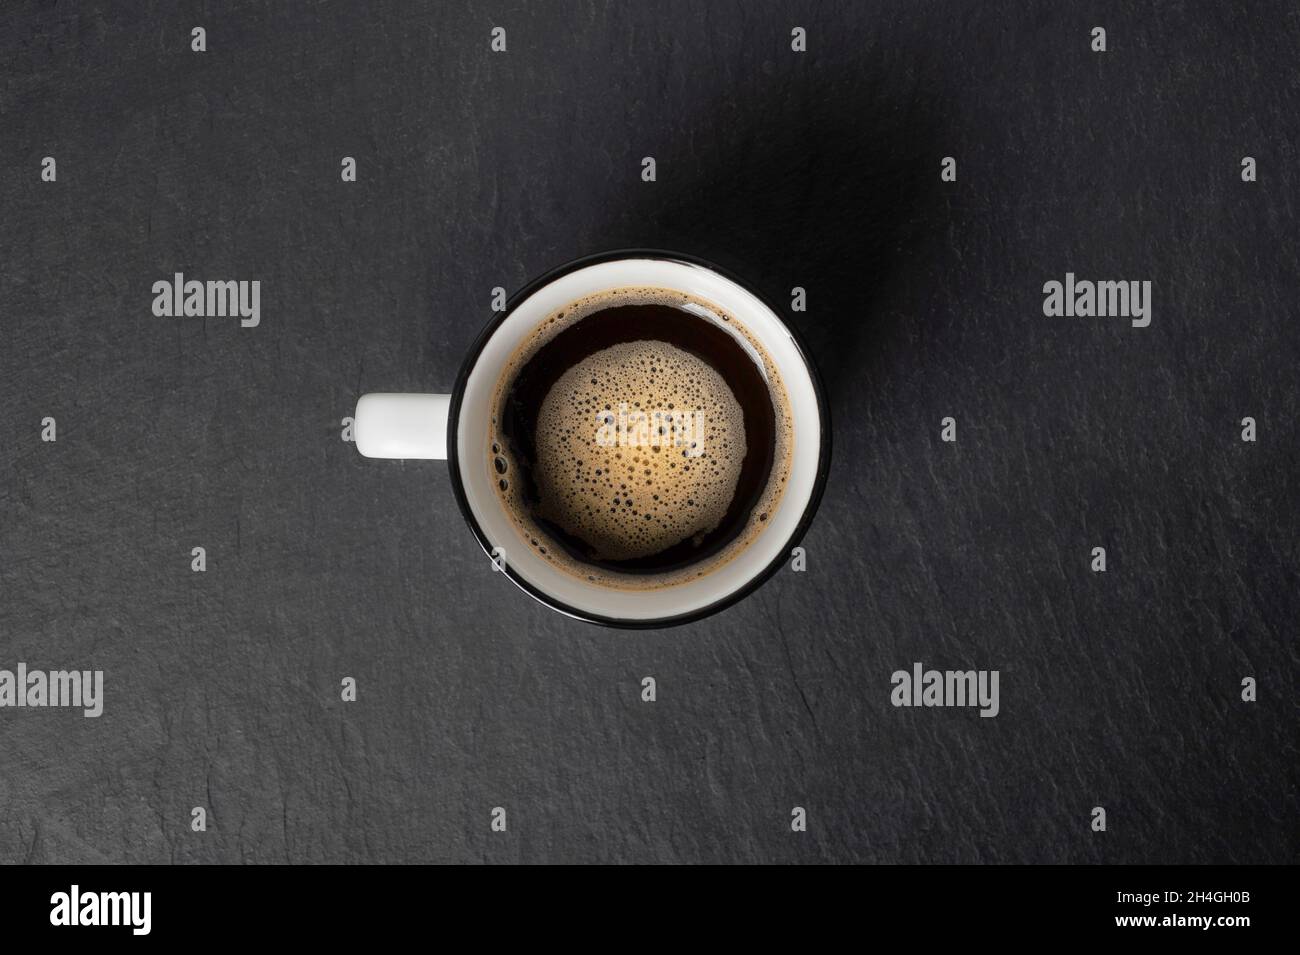 Eine Tasse Kaffee mit schönem Schaum in der Nähe Kaffeebohnen sind auf einem schwarzen Stein Hintergrund Draufsicht Kopierfläche verstreut Stockfoto